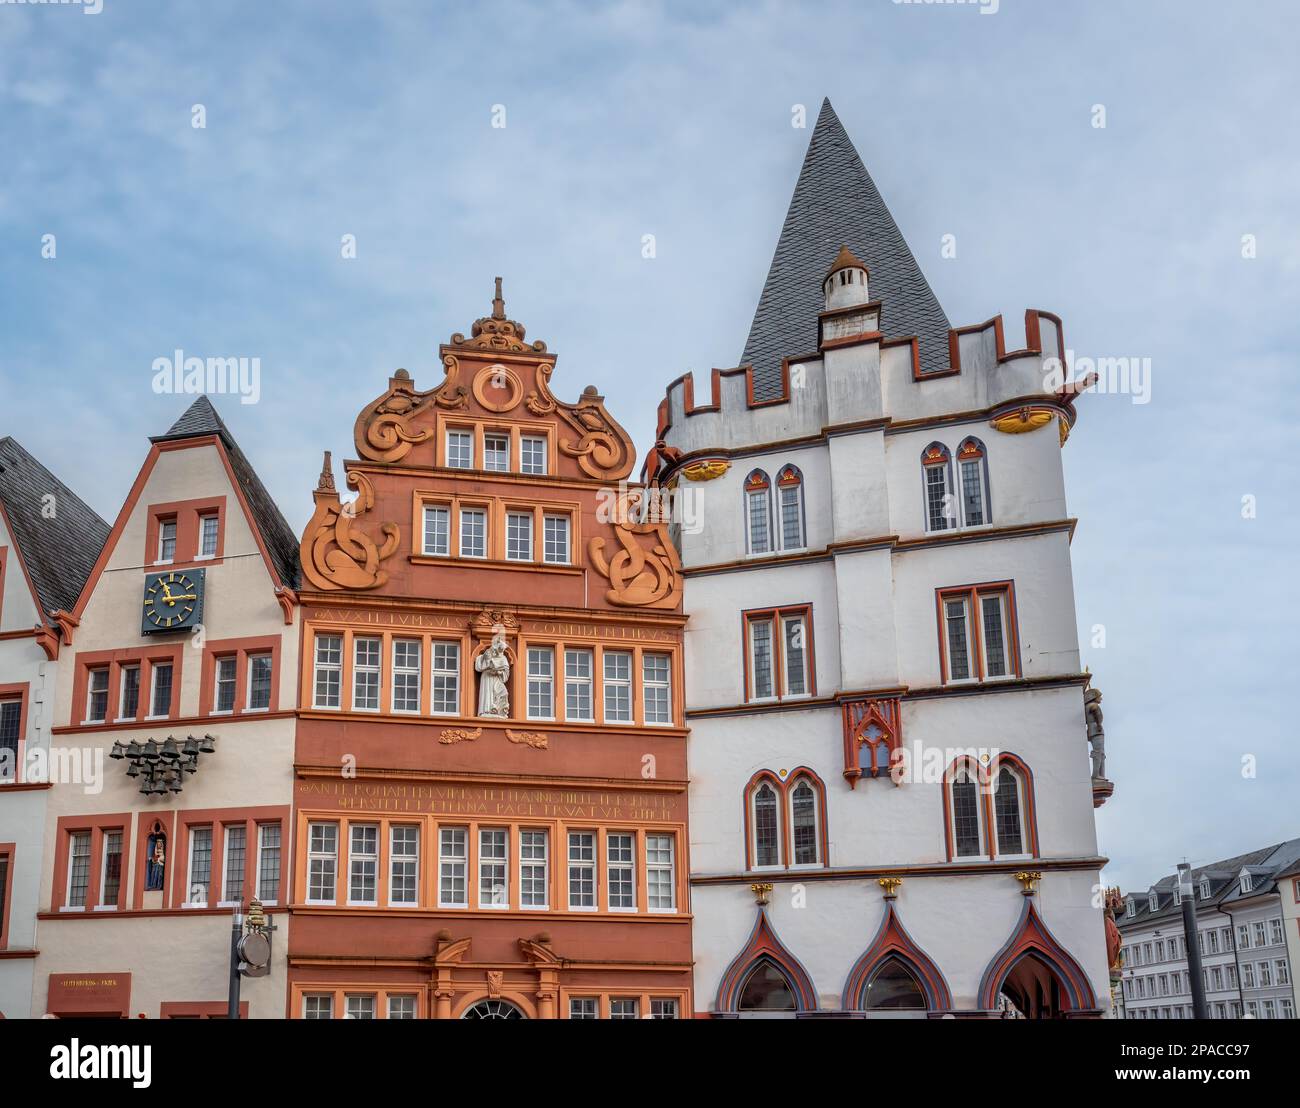 Edificio de la Casa Roja (Rotes Haus) en la Plaza Hauptmarkt - Trier, Alemania Foto de stock